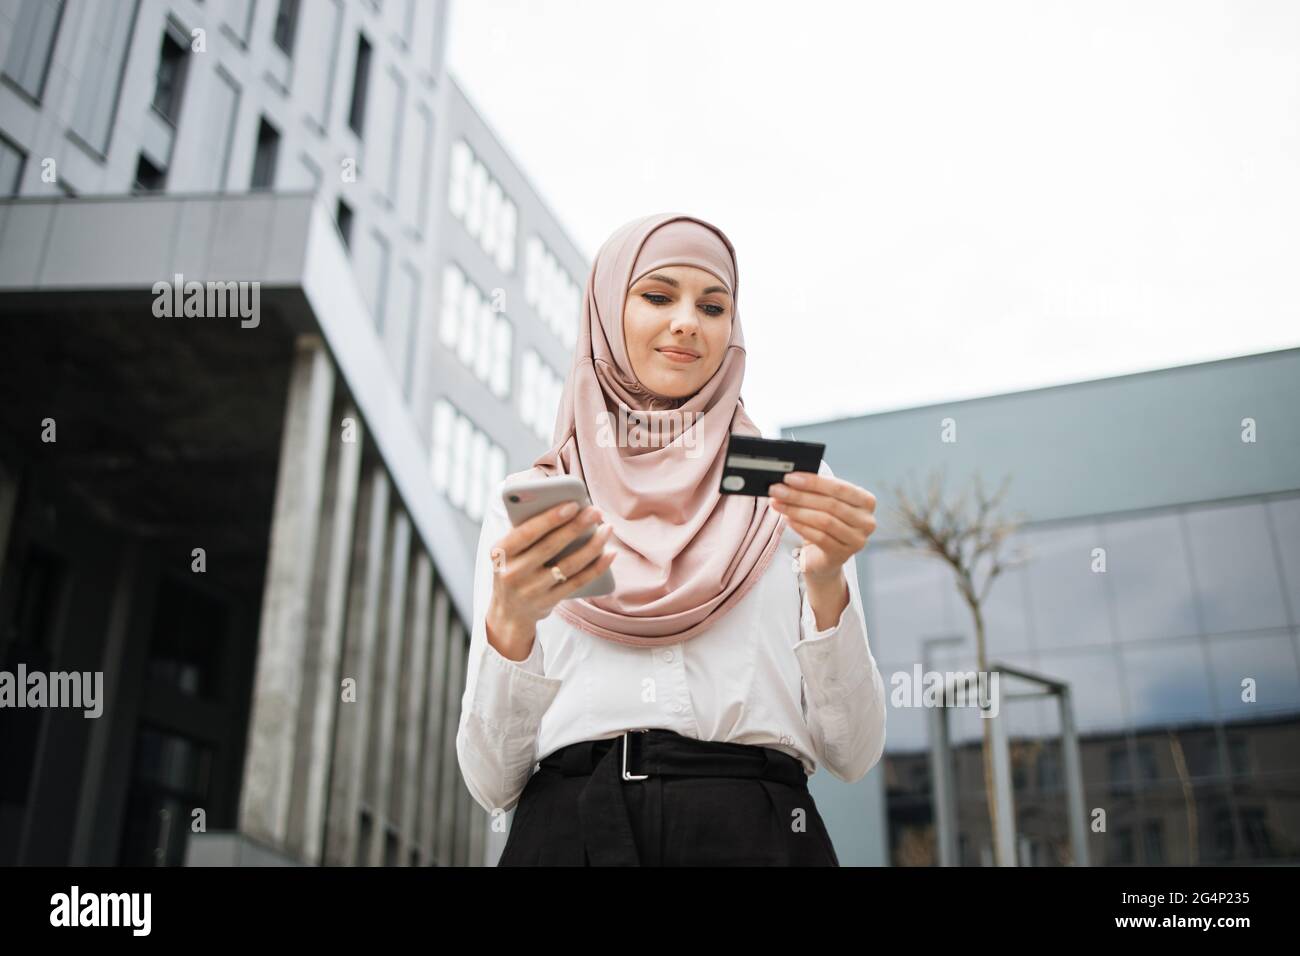 Schöne muslimische Frau in formeller Kleidung und Hijab tun Online-Shopping  mit Kreditkarte und Smartphone. Junge Dame, die in der Nähe des  Bürogebäudes steht und die einfache Bezahlung genießt Stockfotografie -  Alamy